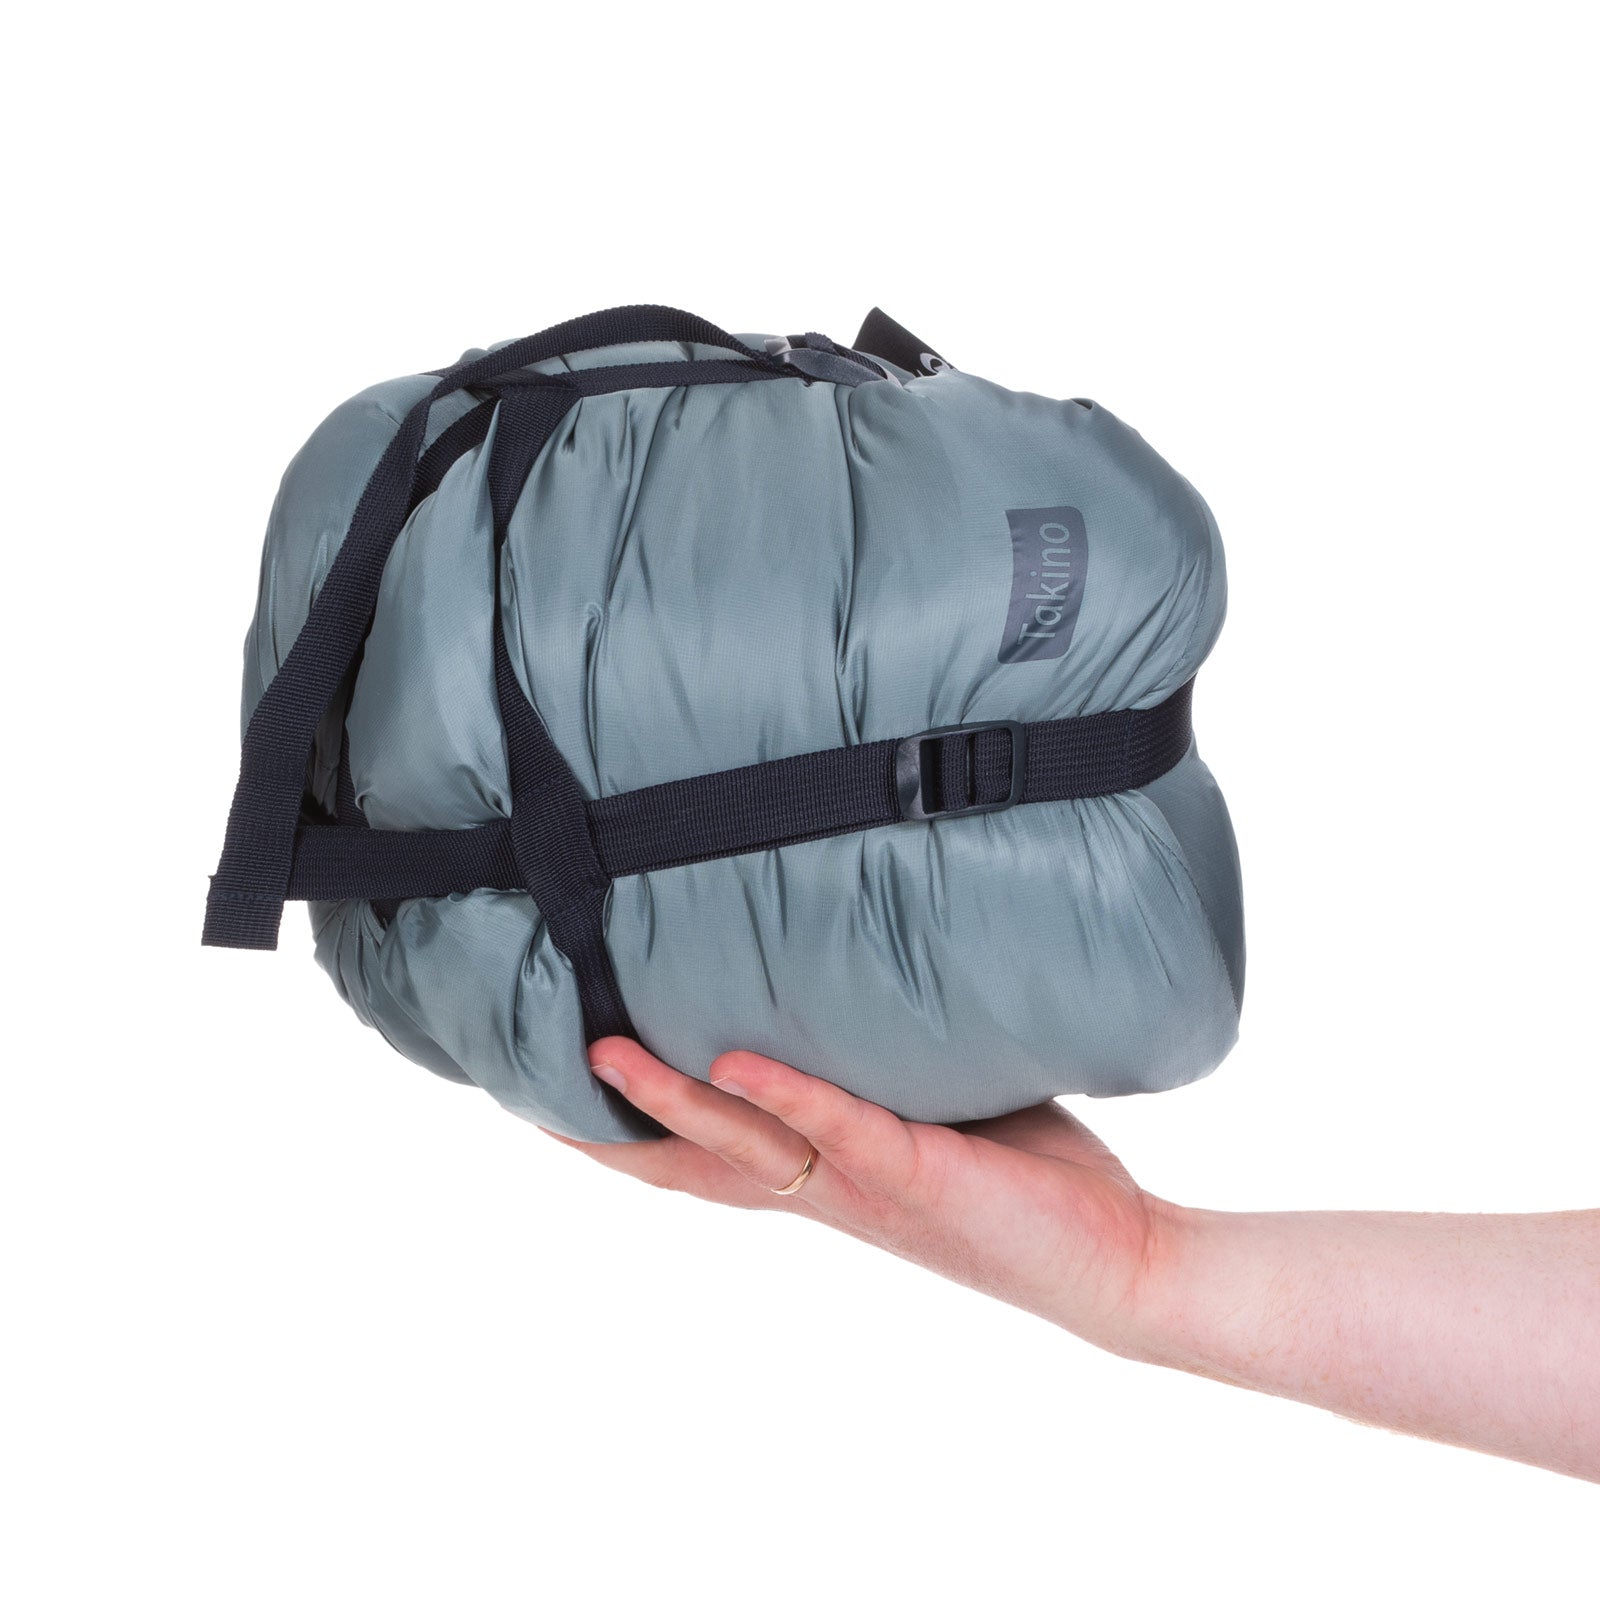 qeedo sleeping bag Takino, warm down sleeping bag